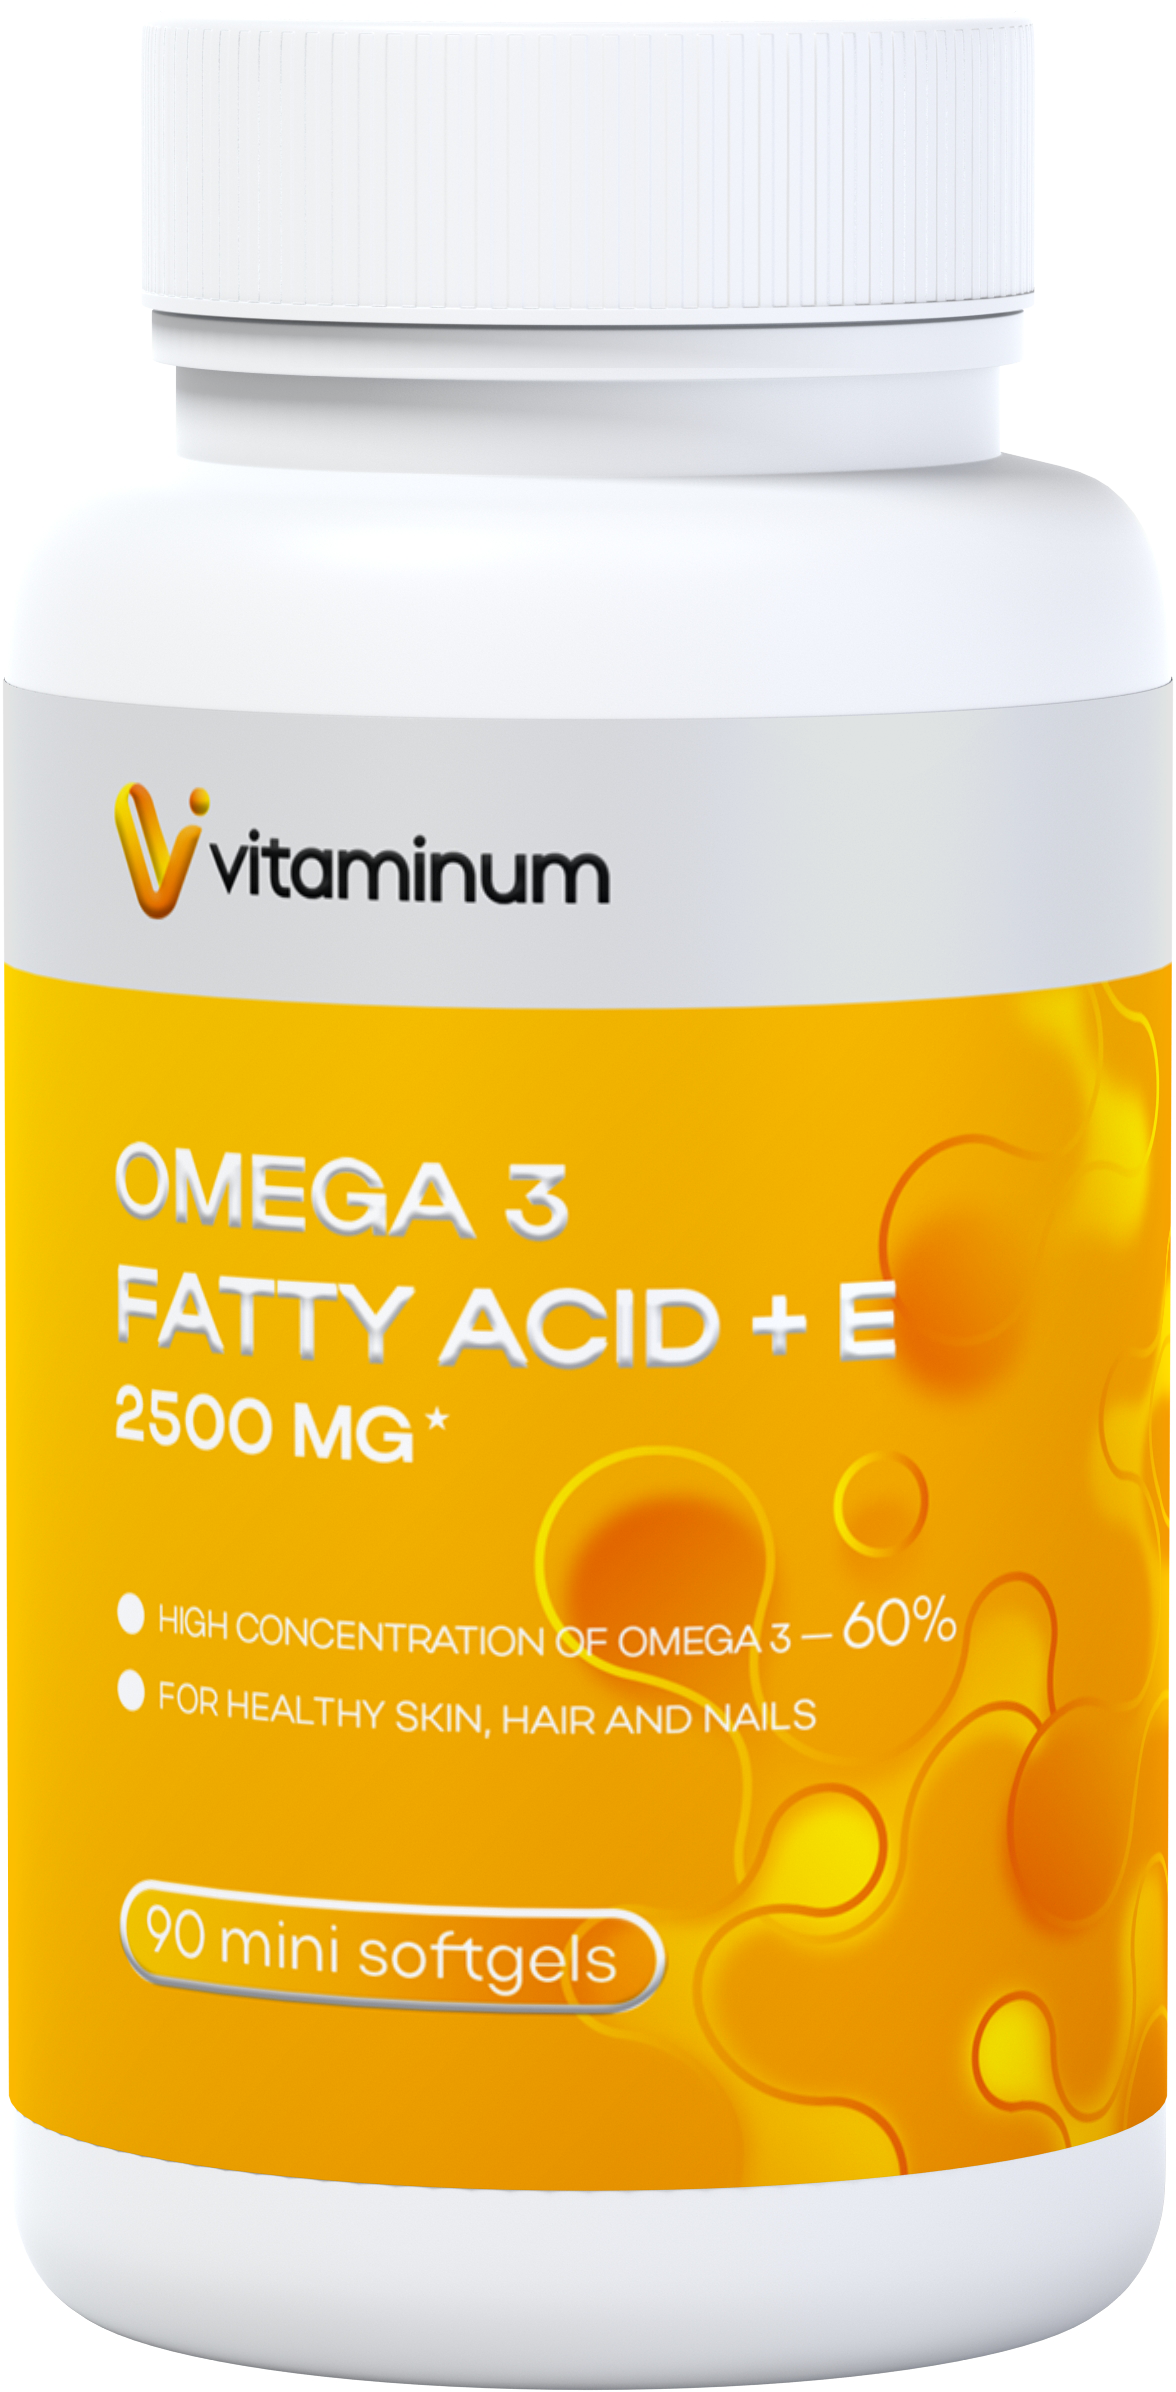  Vitaminum ОМЕГА 3 60% + витамин Е (2500 MG*) 90 капсул 700 мг   в Костомукше